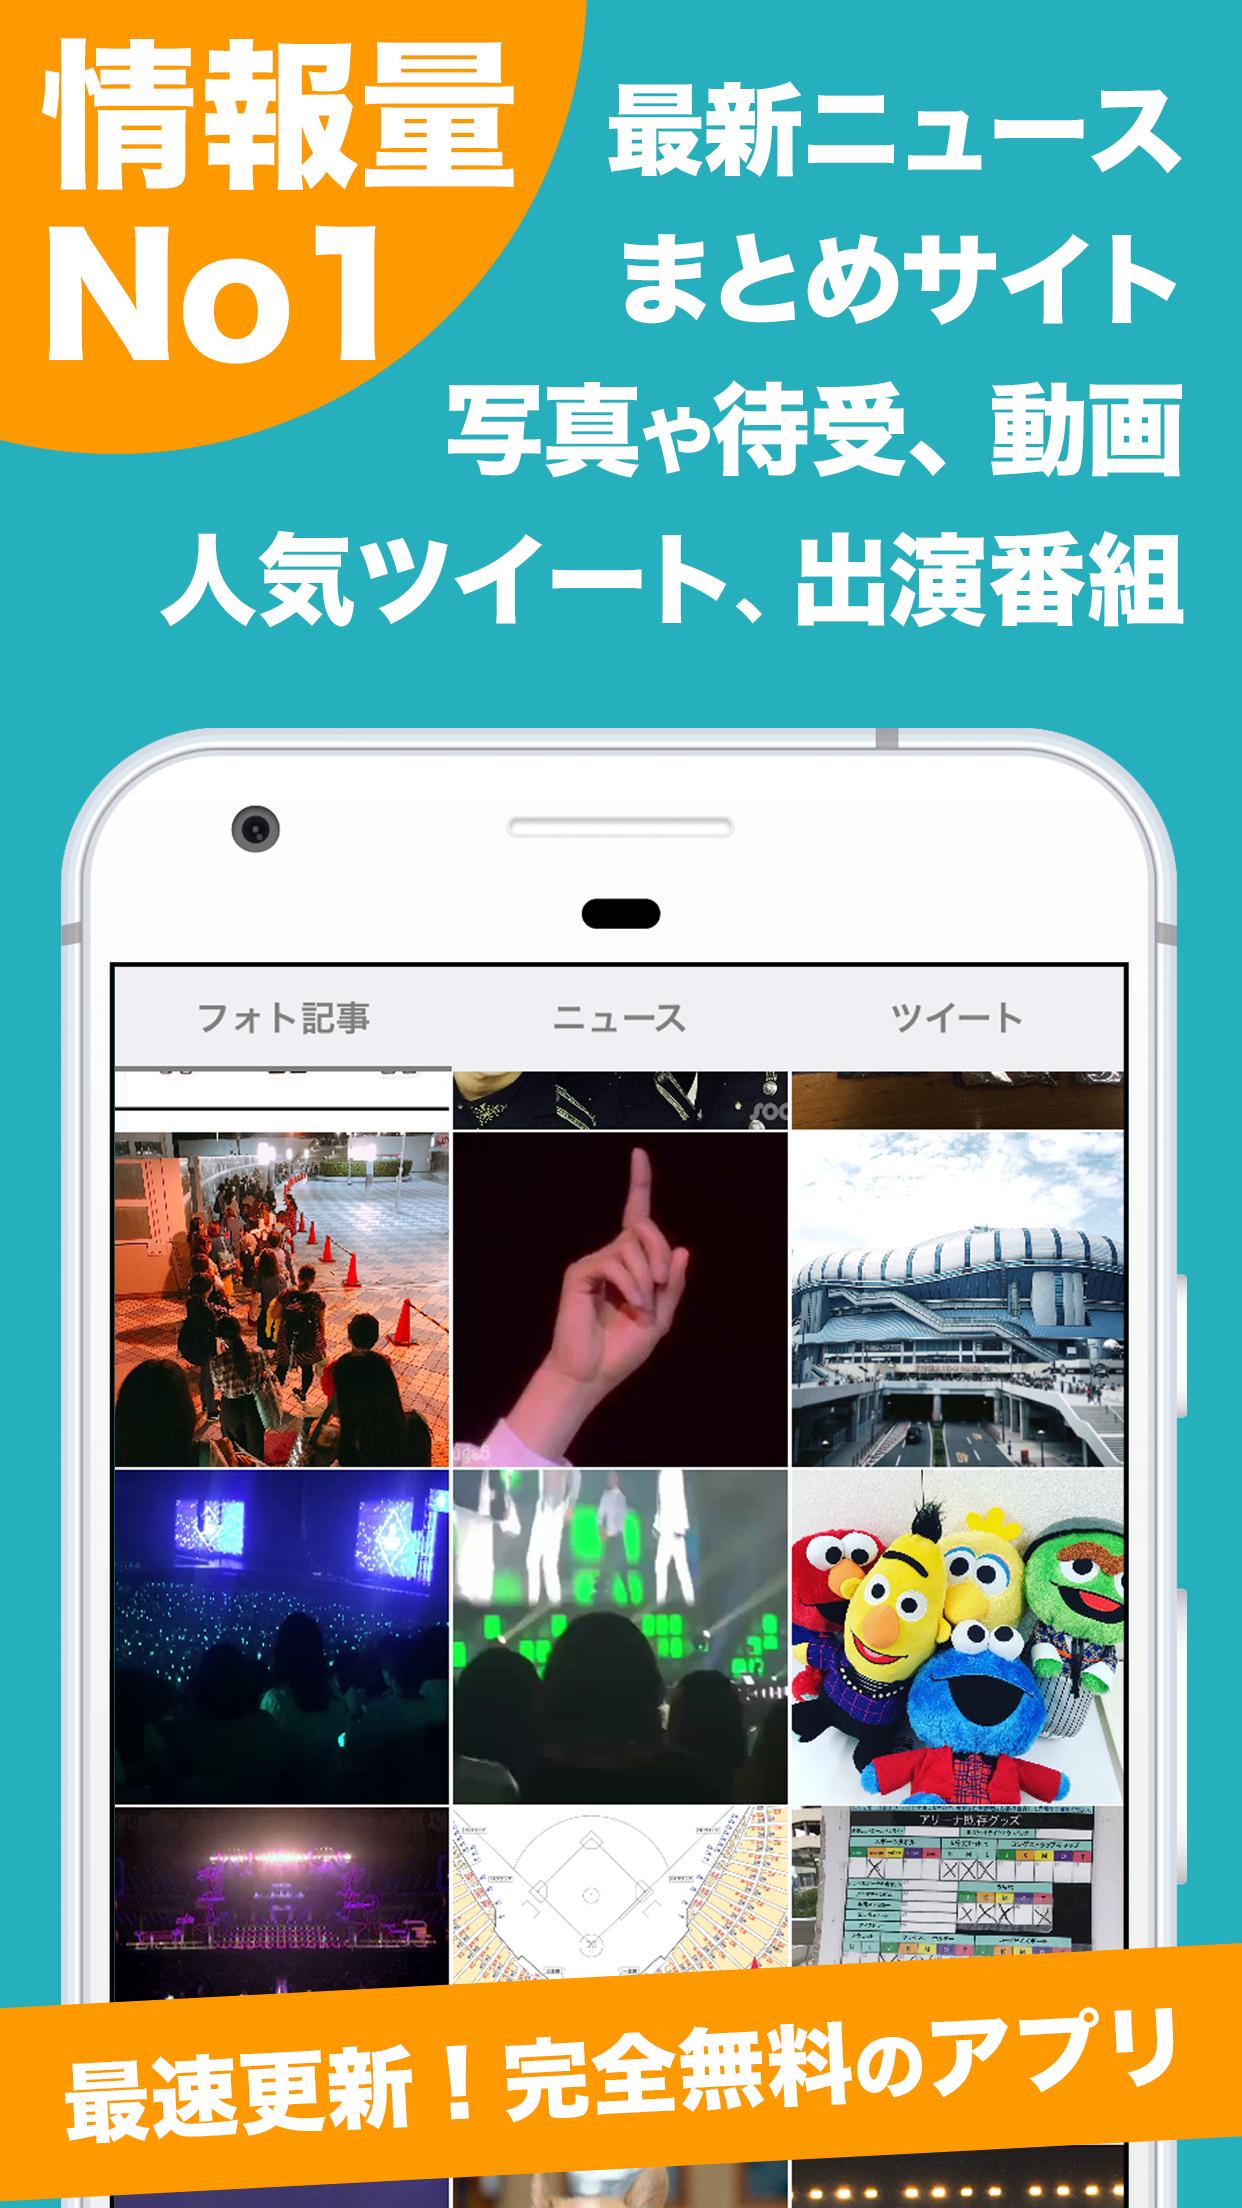 ビッベンまとめタブ For Bigbang For Android Apk Download